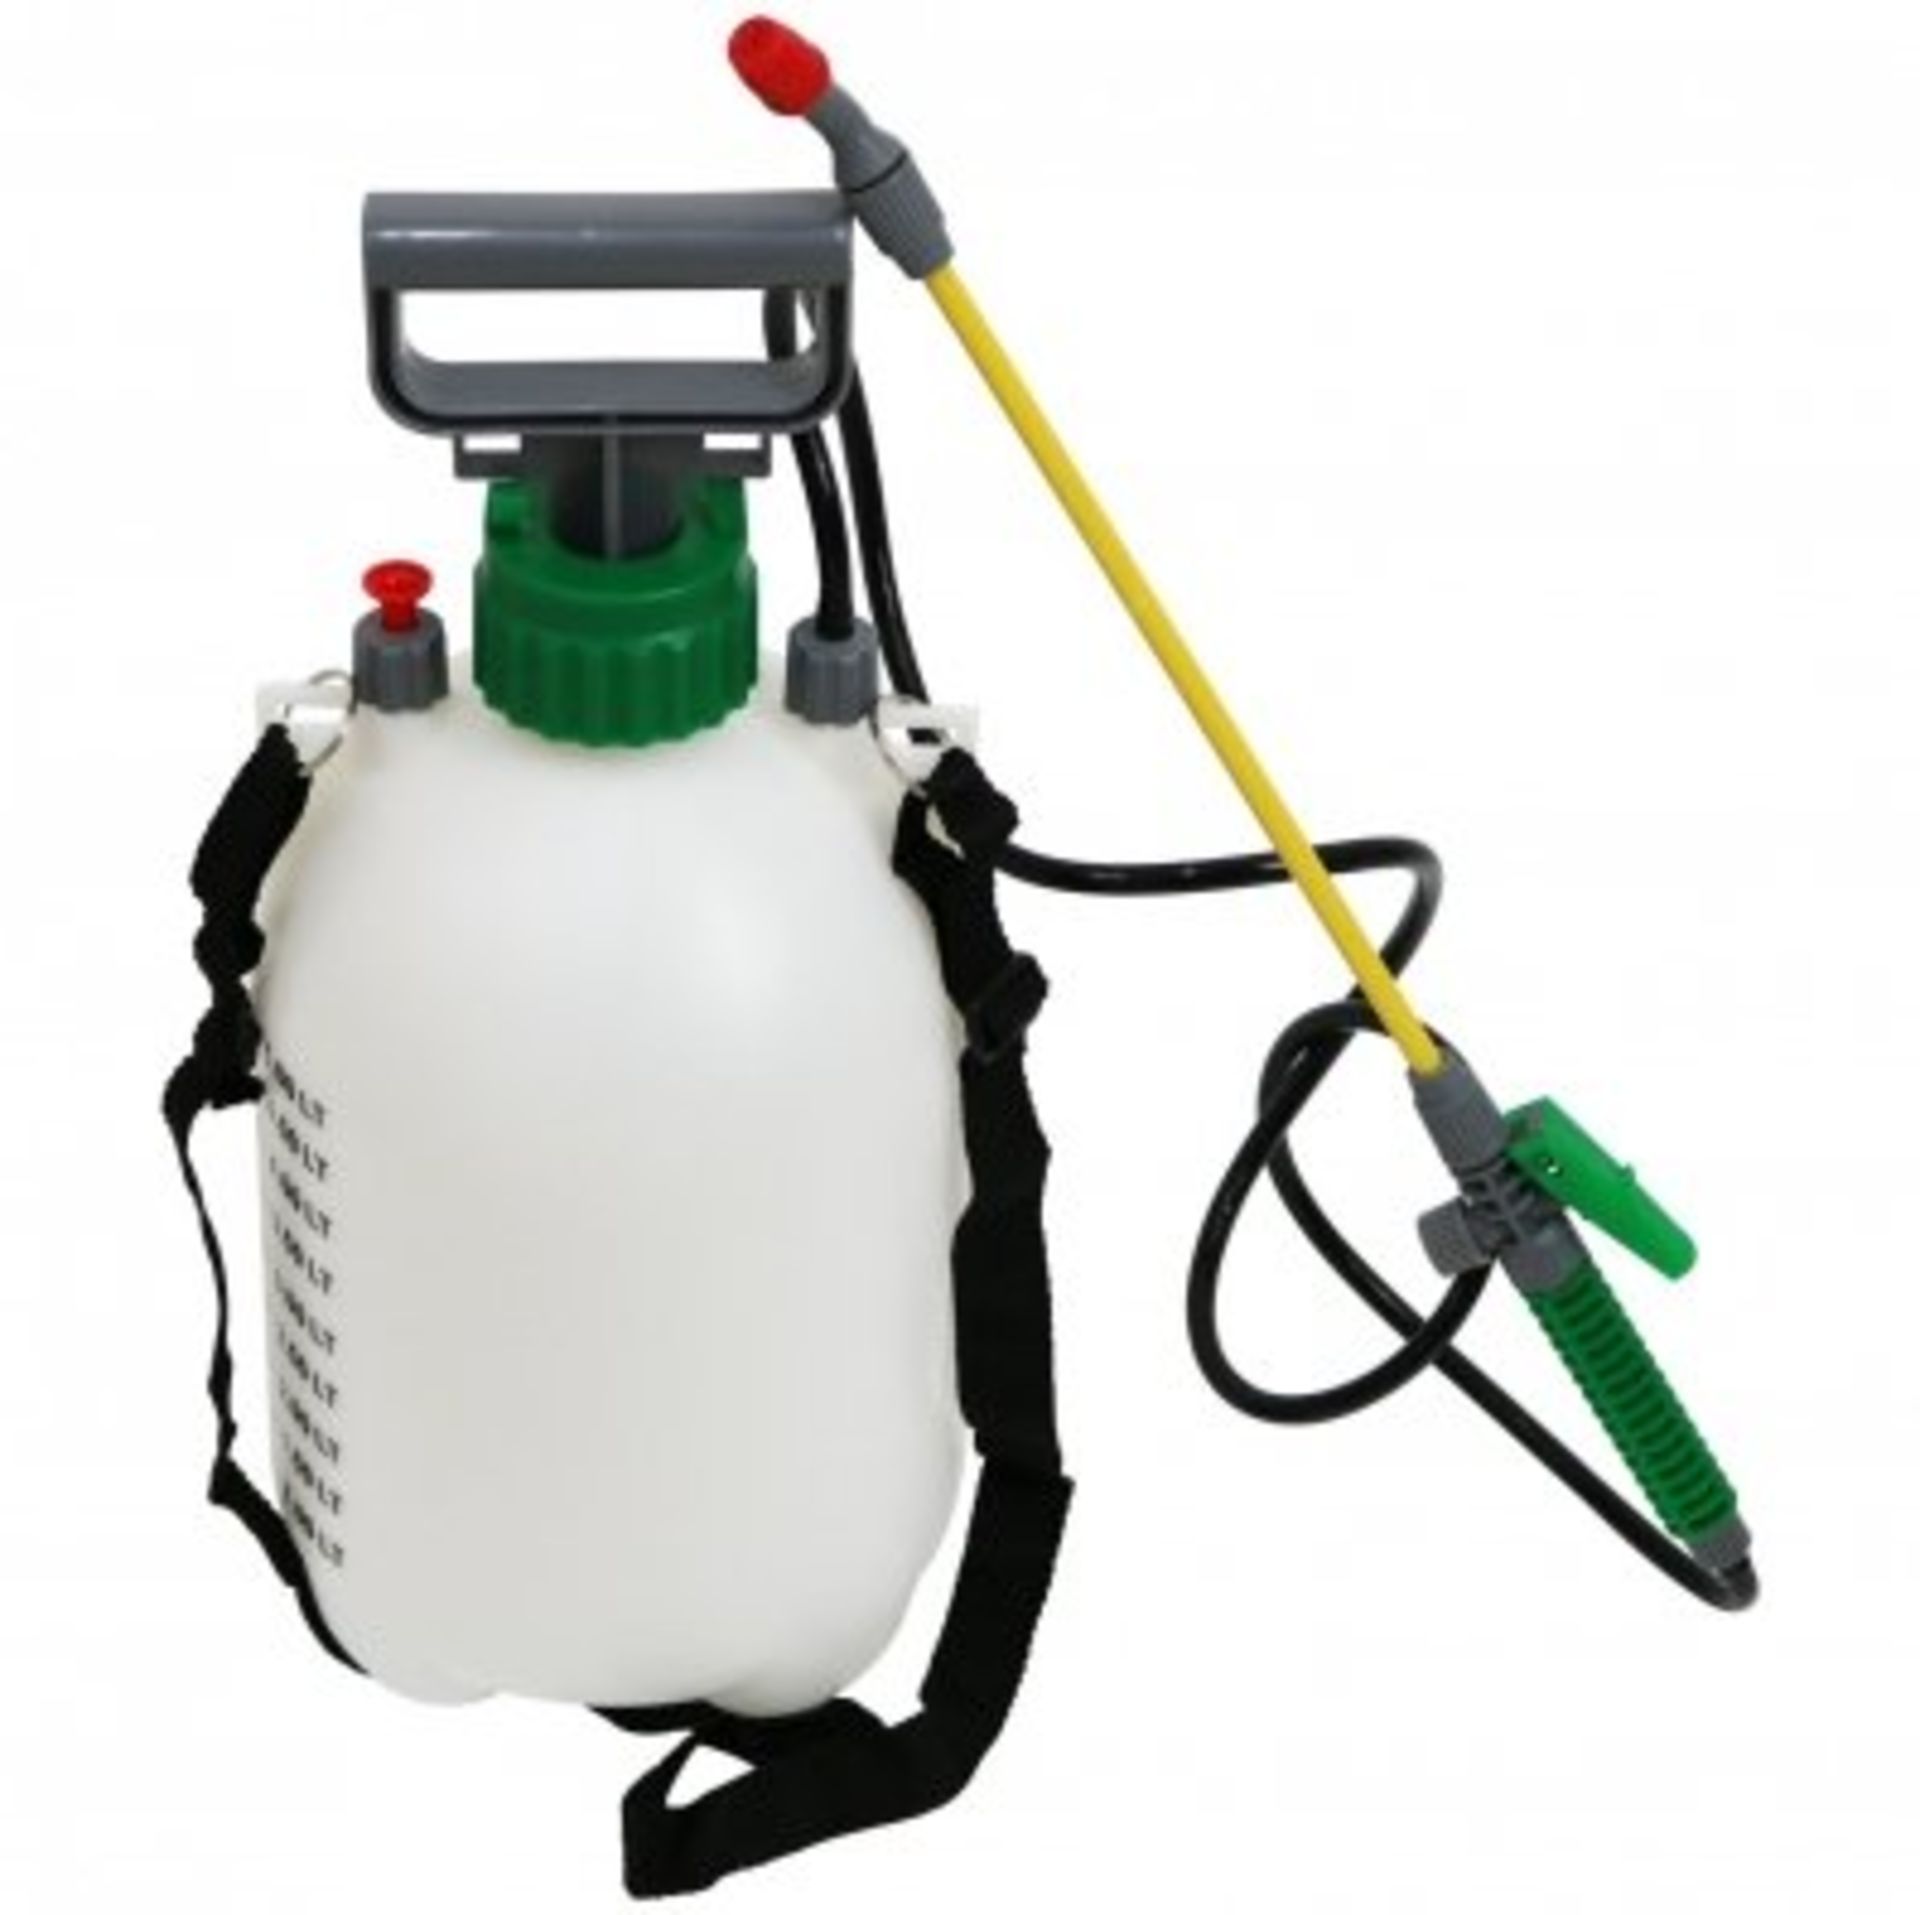 (RU64) 5L 5 Litre Pump Action Pressure Crop Garden Weed Sprayer The pressure sprayer has a...